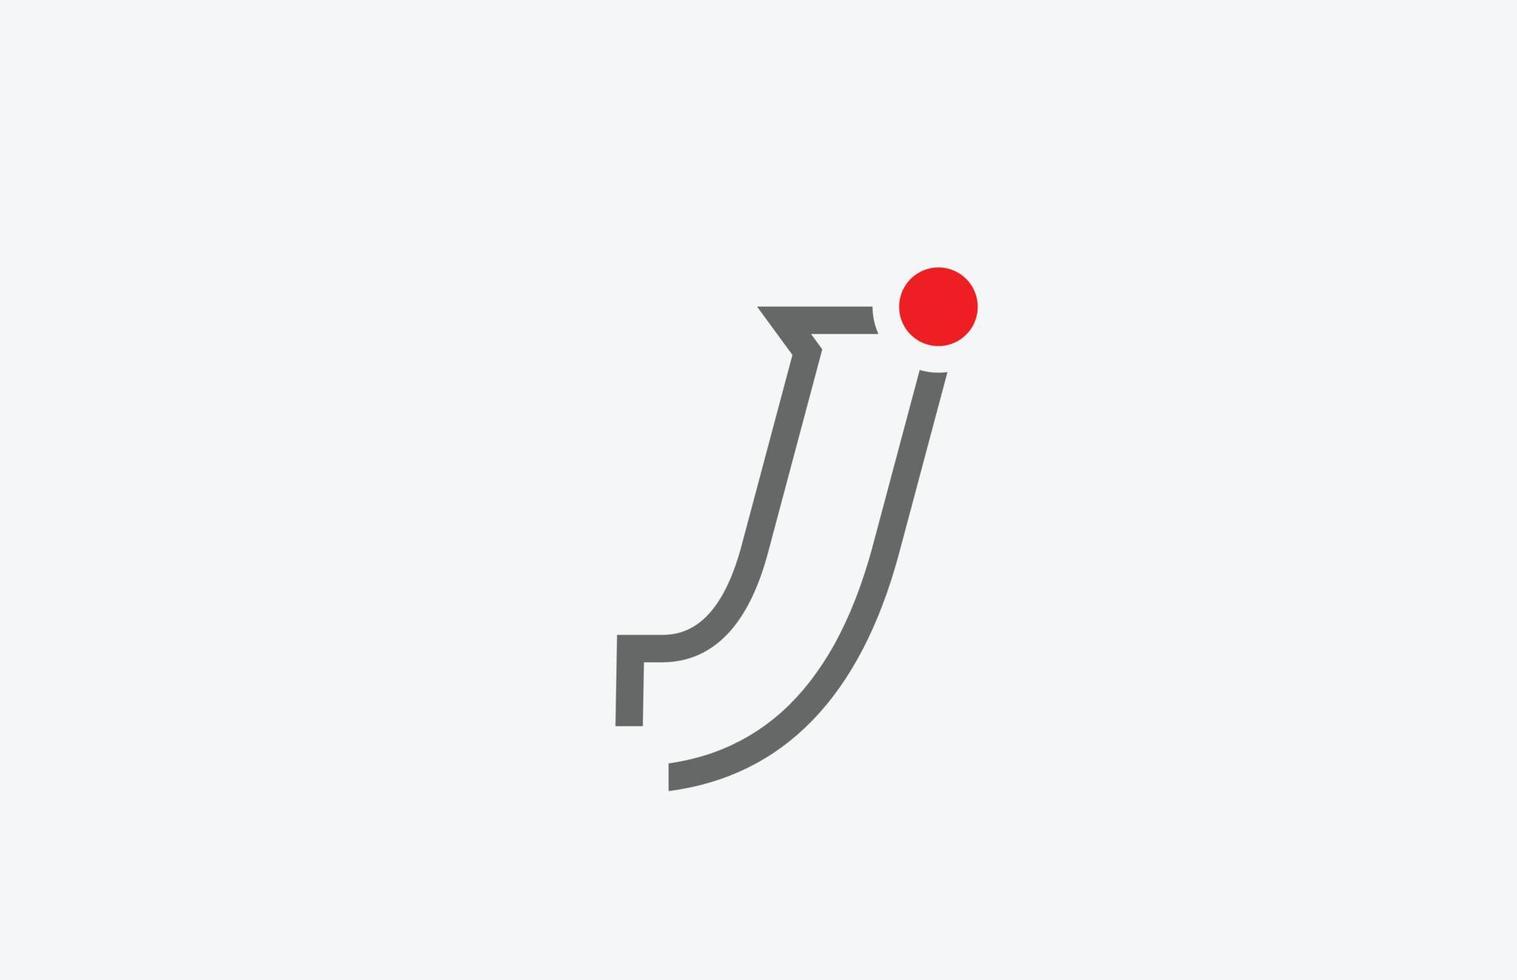 j design de logotipo de ícone de letra do alfabeto. modelo criativo para empresa vetor